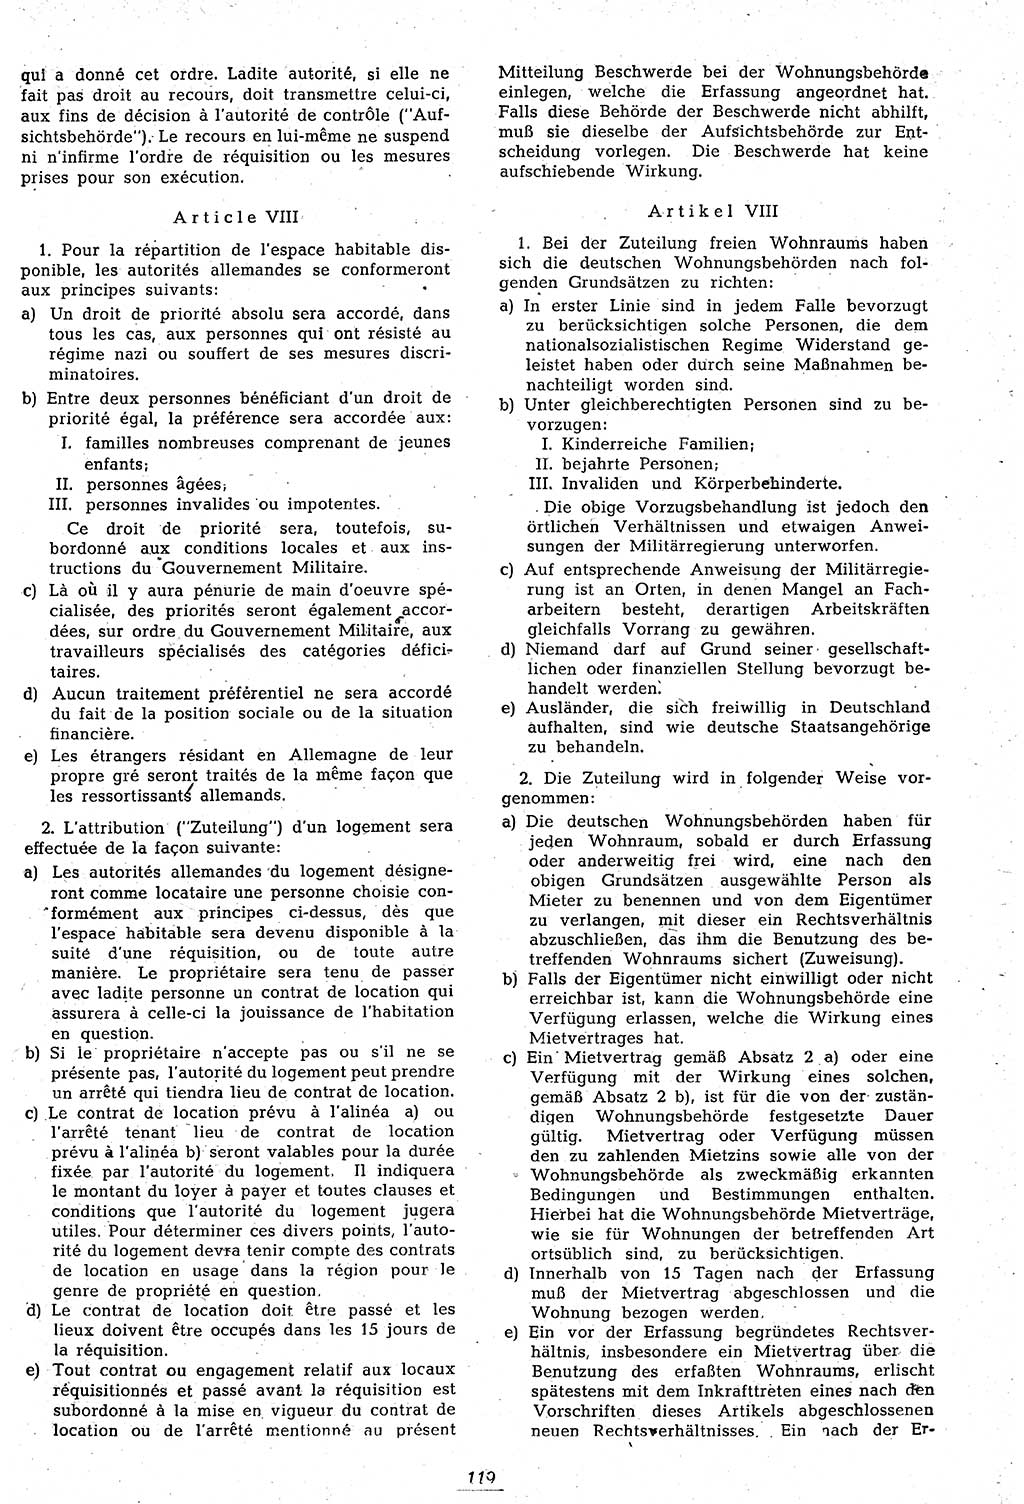 Amtsblatt des Kontrollrats (ABlKR) in Deutschland 1946, Seite 119/2 (ABlKR Dtl. 1946, S. 119/2)